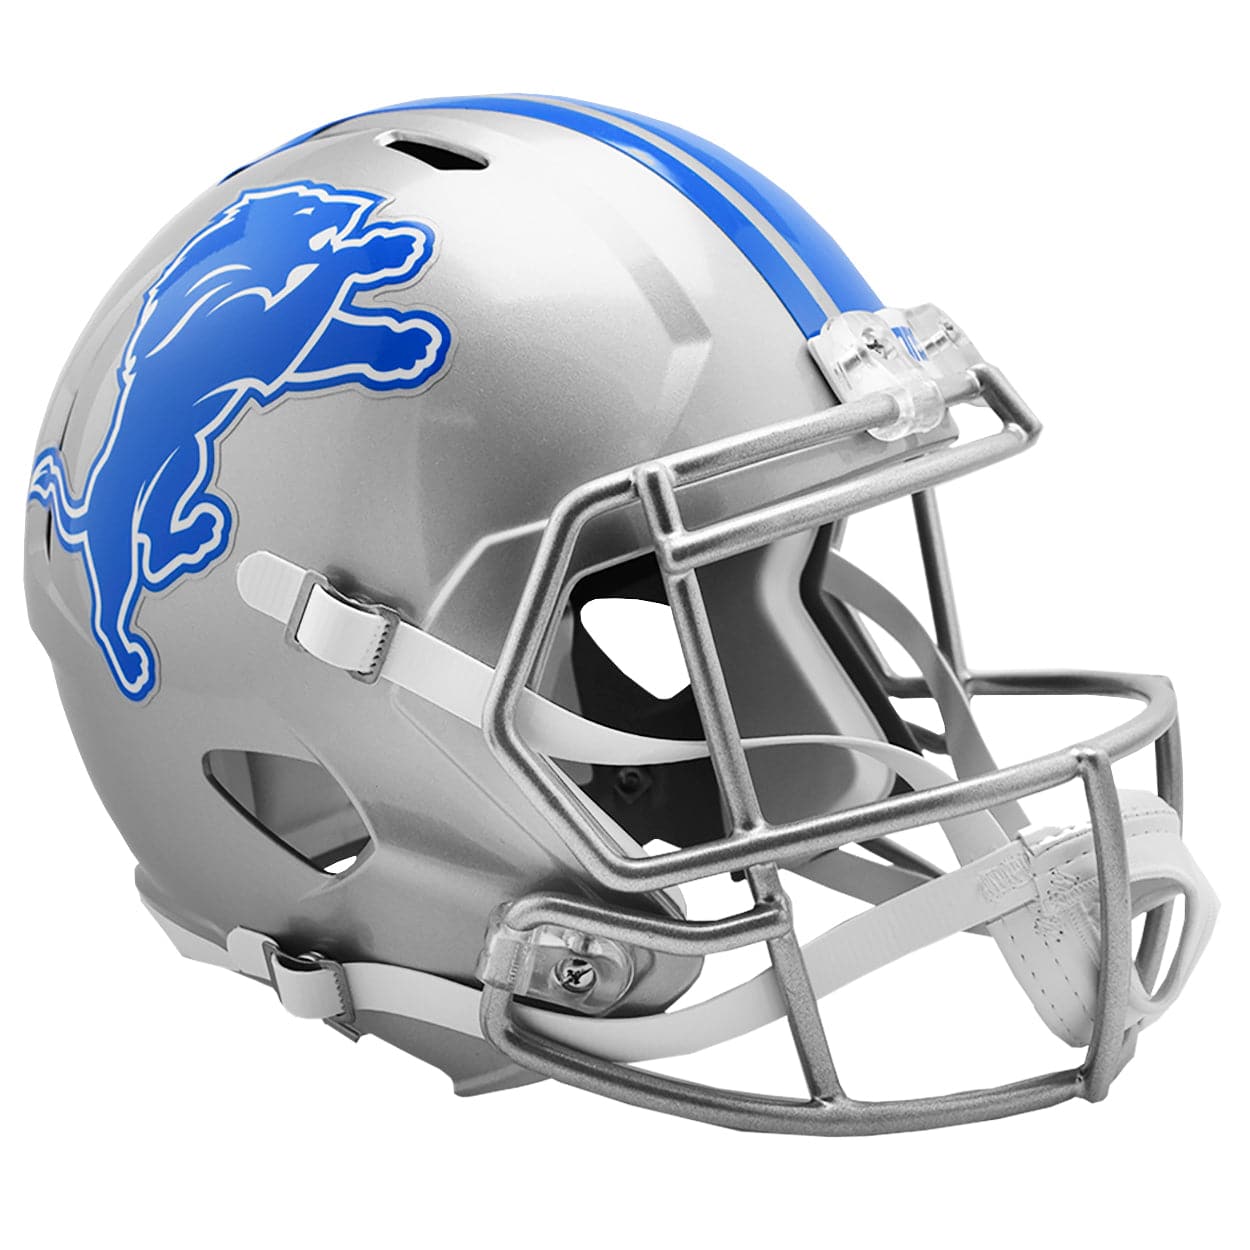 Detroit Lions Riddell NFL Full Size Speed Replica Helmet - Silver